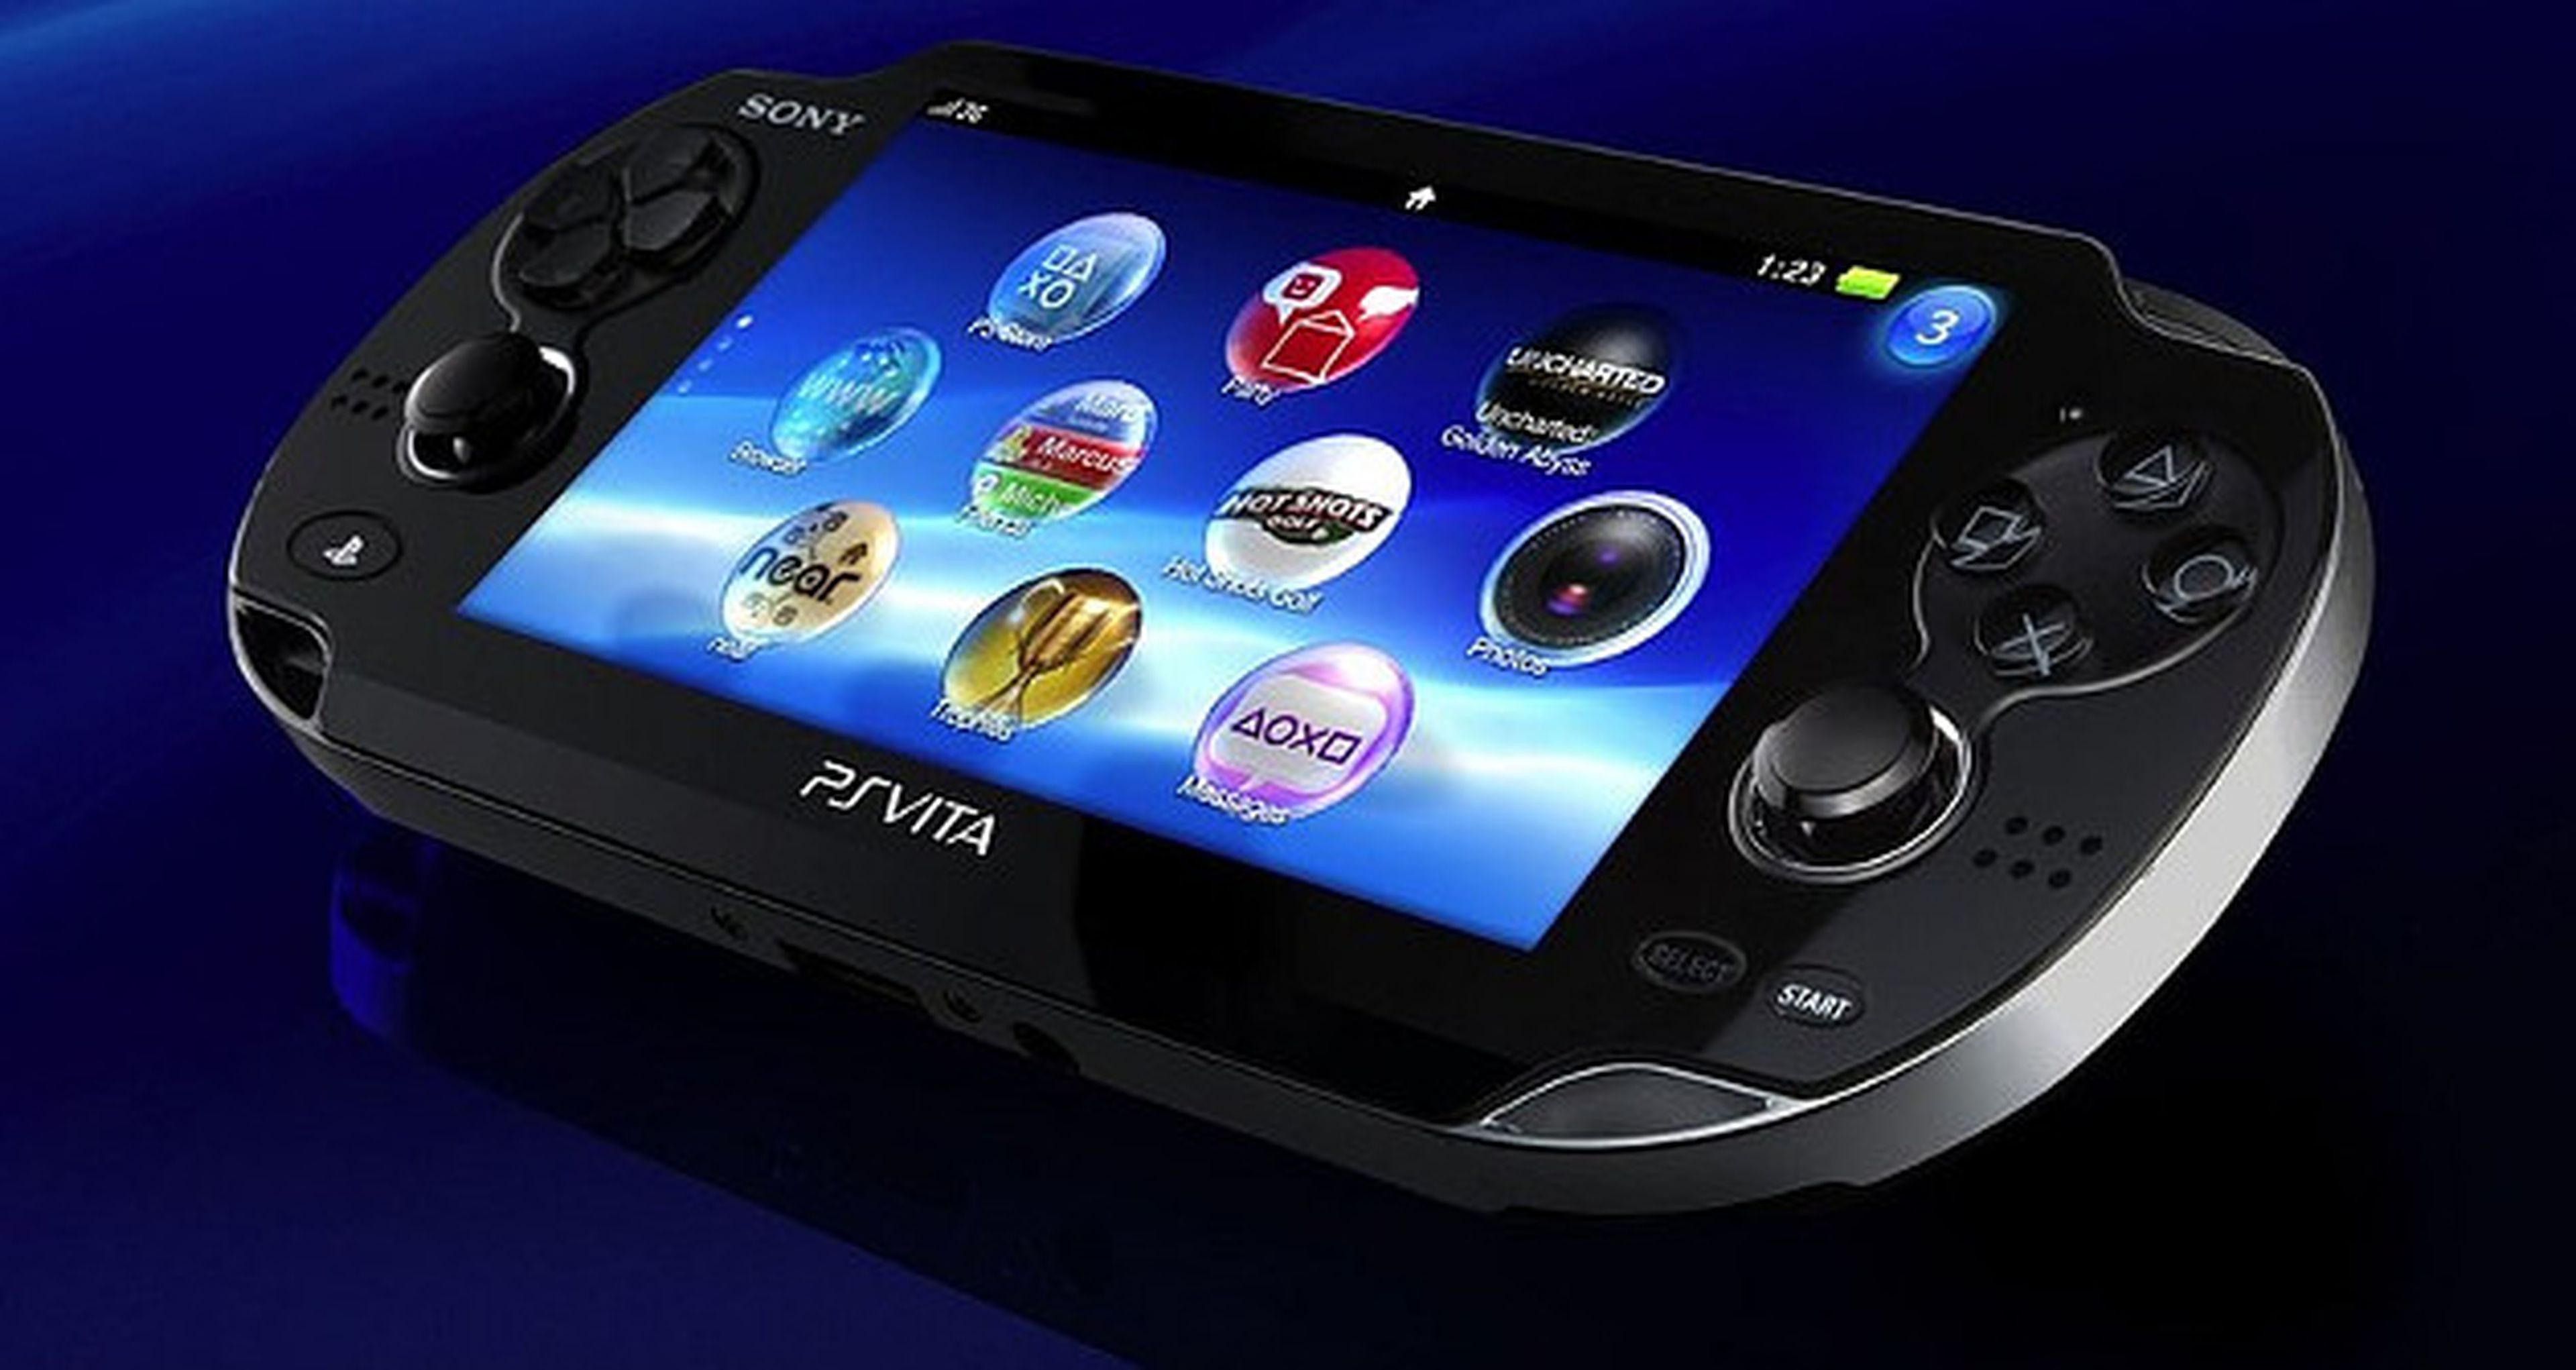 Sony tendrá que compensar a los usuarios por la publicidad engañosa de PS Vita